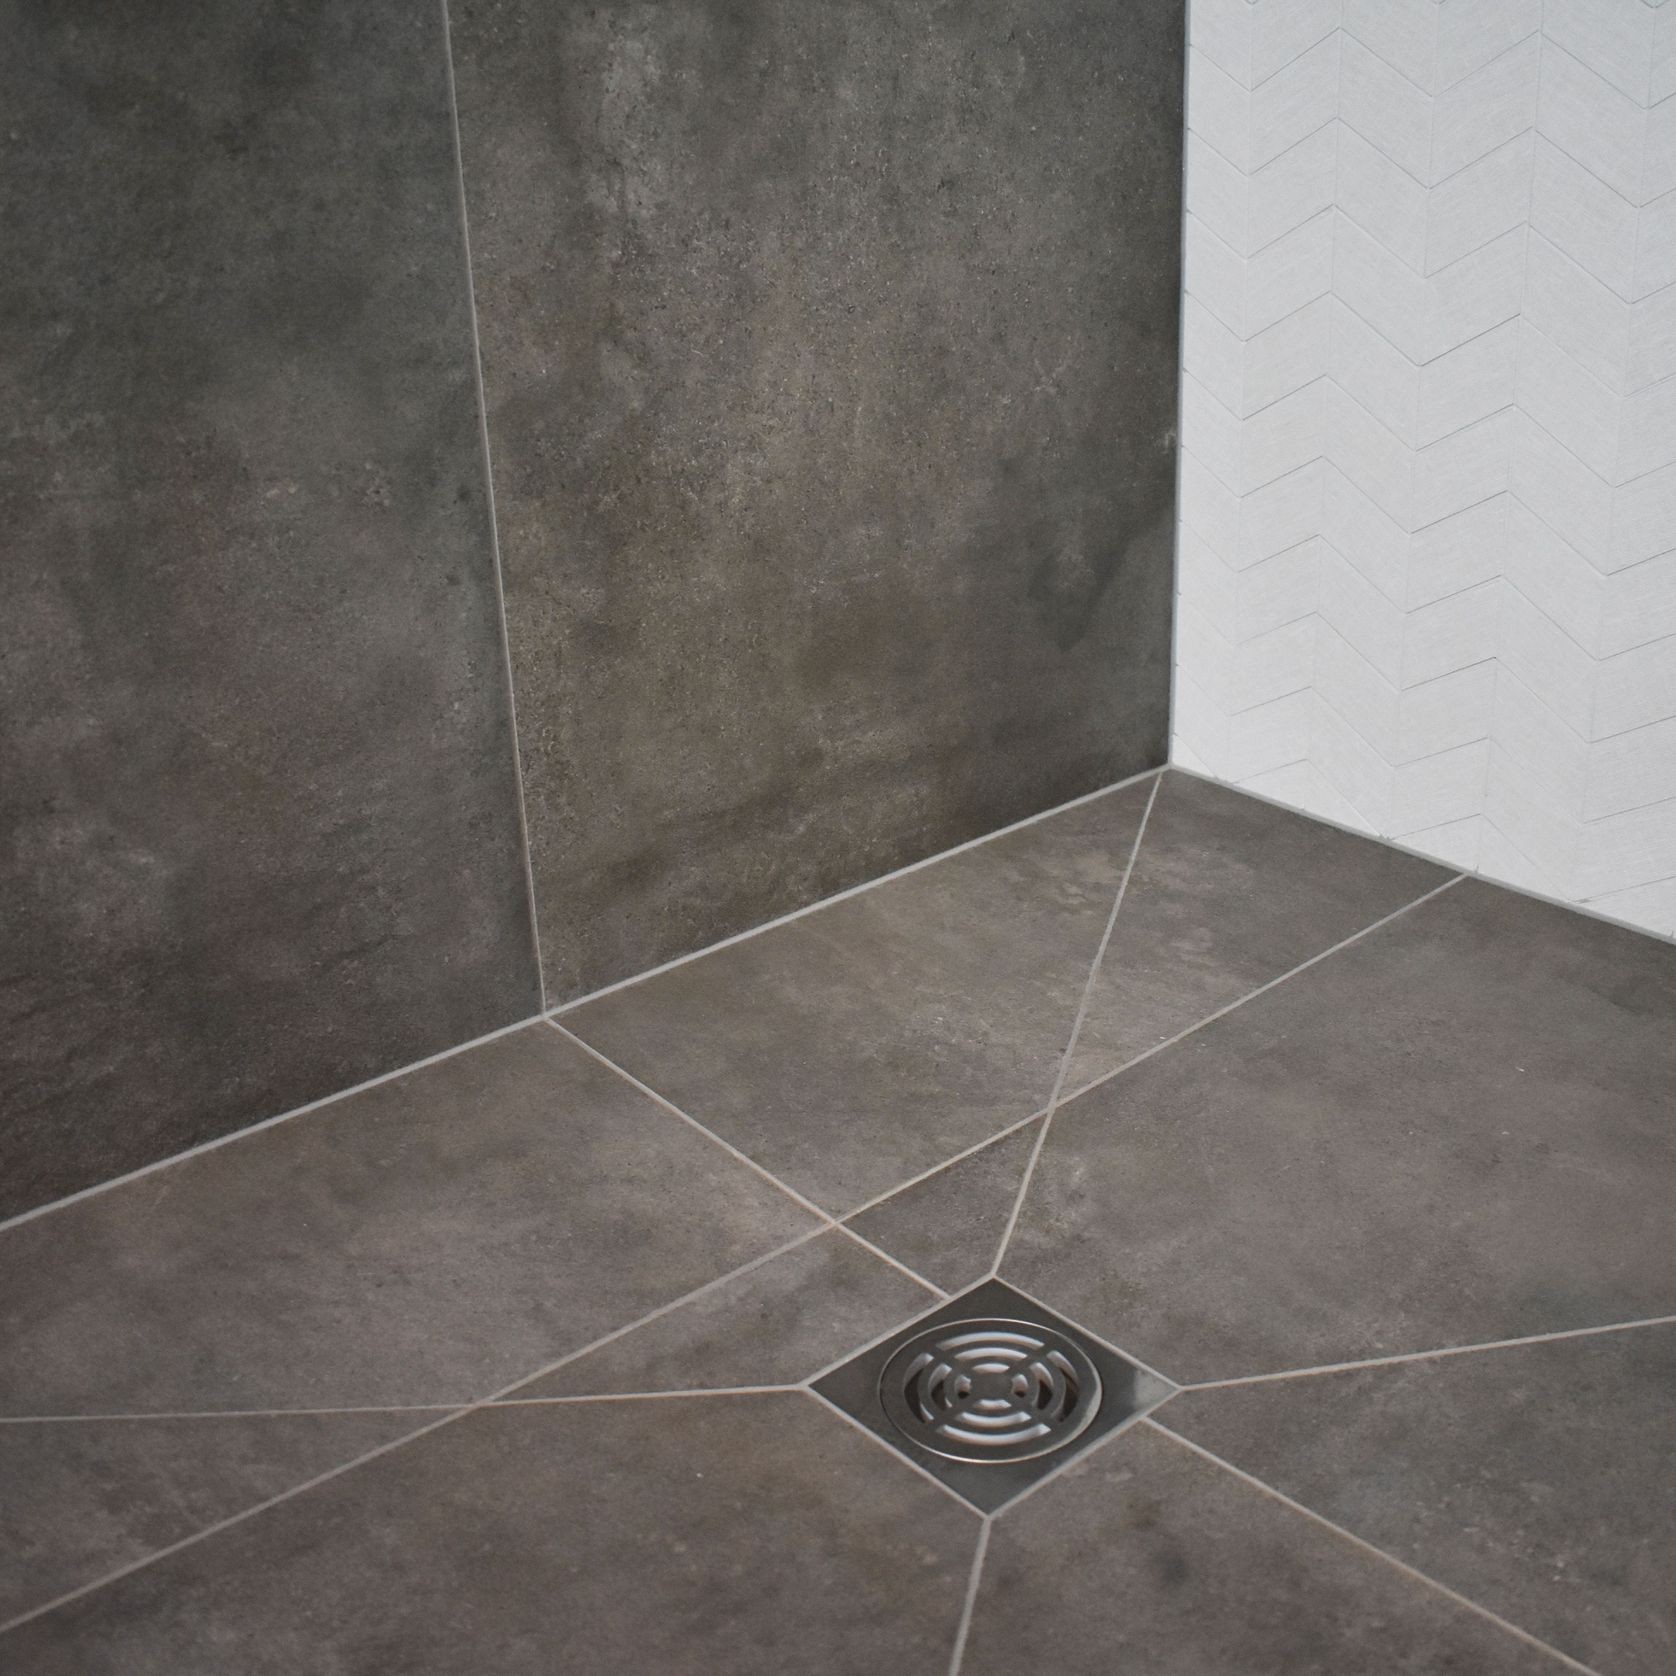 Tile Safe Shower System gallery detail image